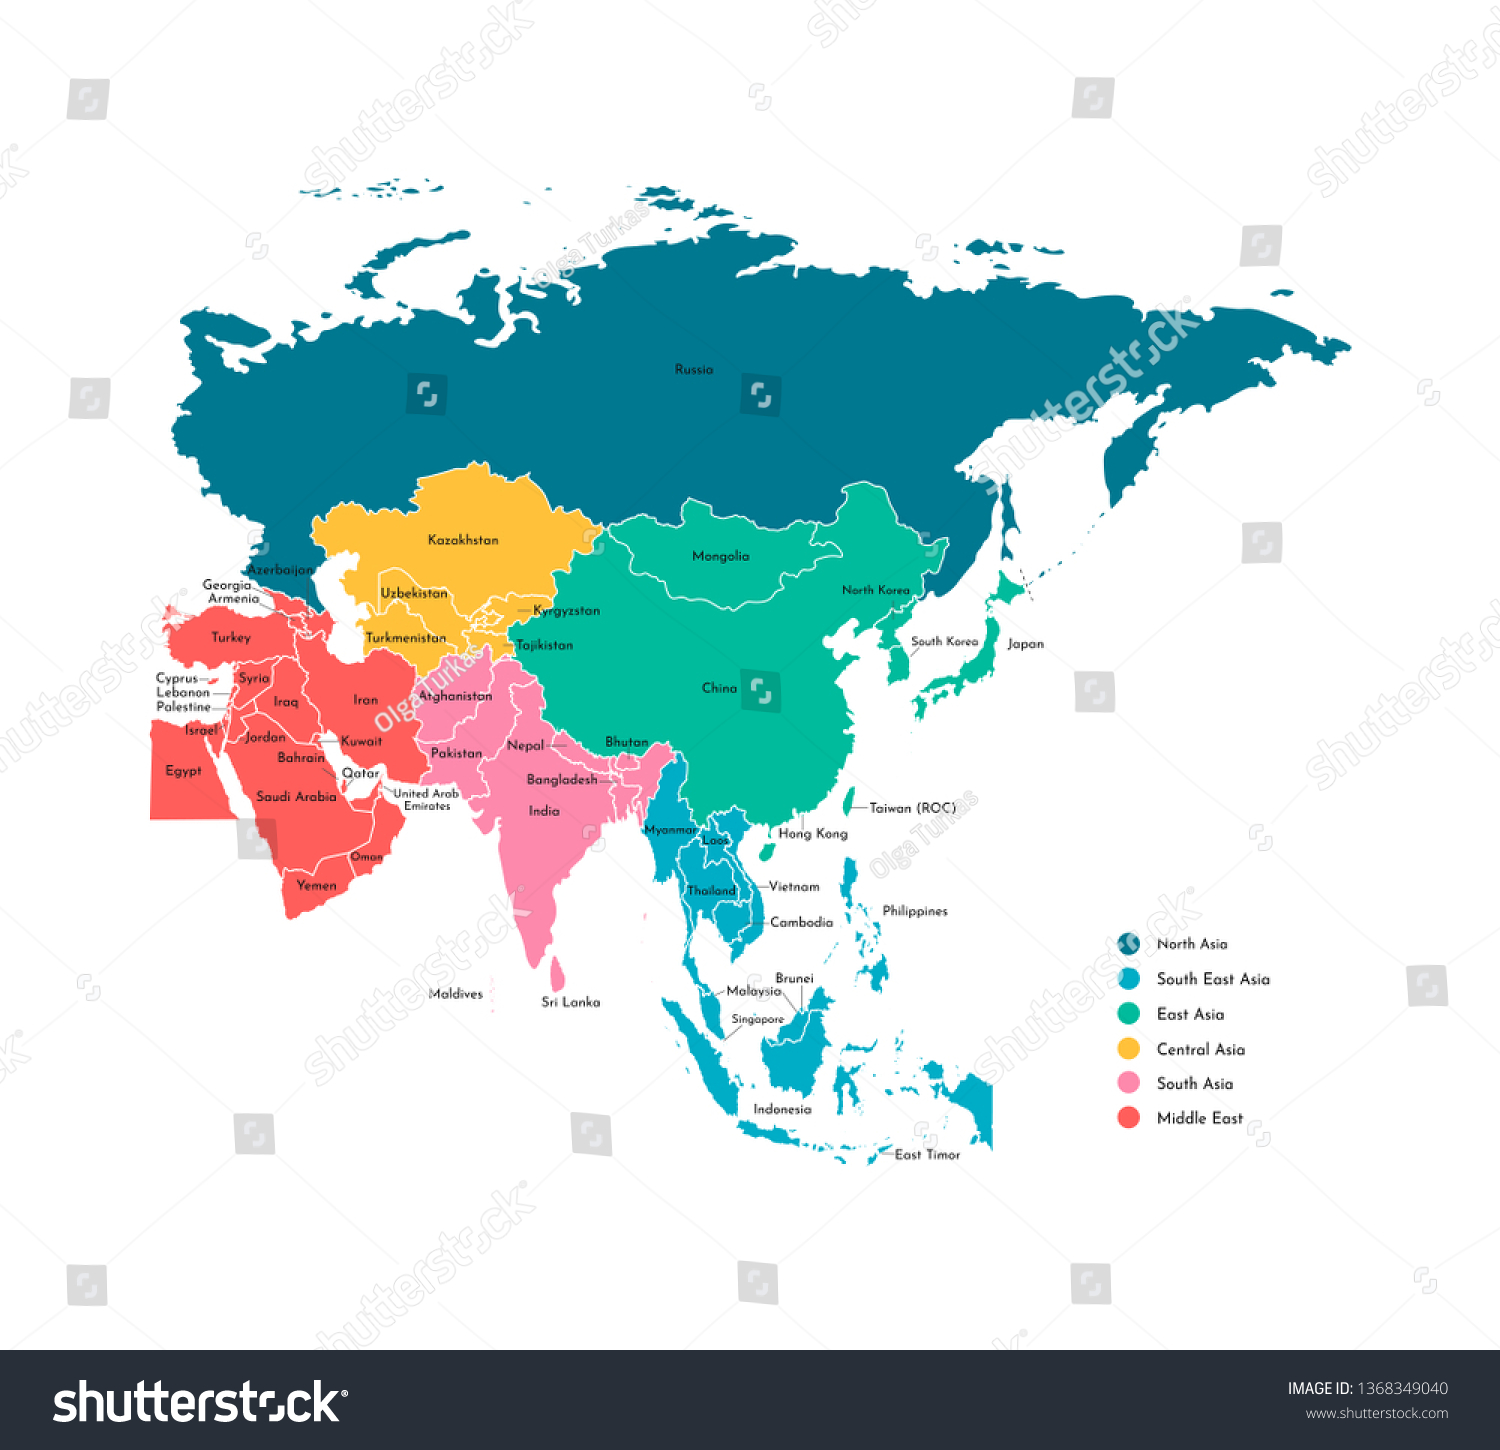 アジアの国々の地図が簡略化されたカラフルなベクターイラスト 州の境界と名前 すべてのアジア地域 白い輪郭と背景 のベクター画像素材 ロイヤリティフリー